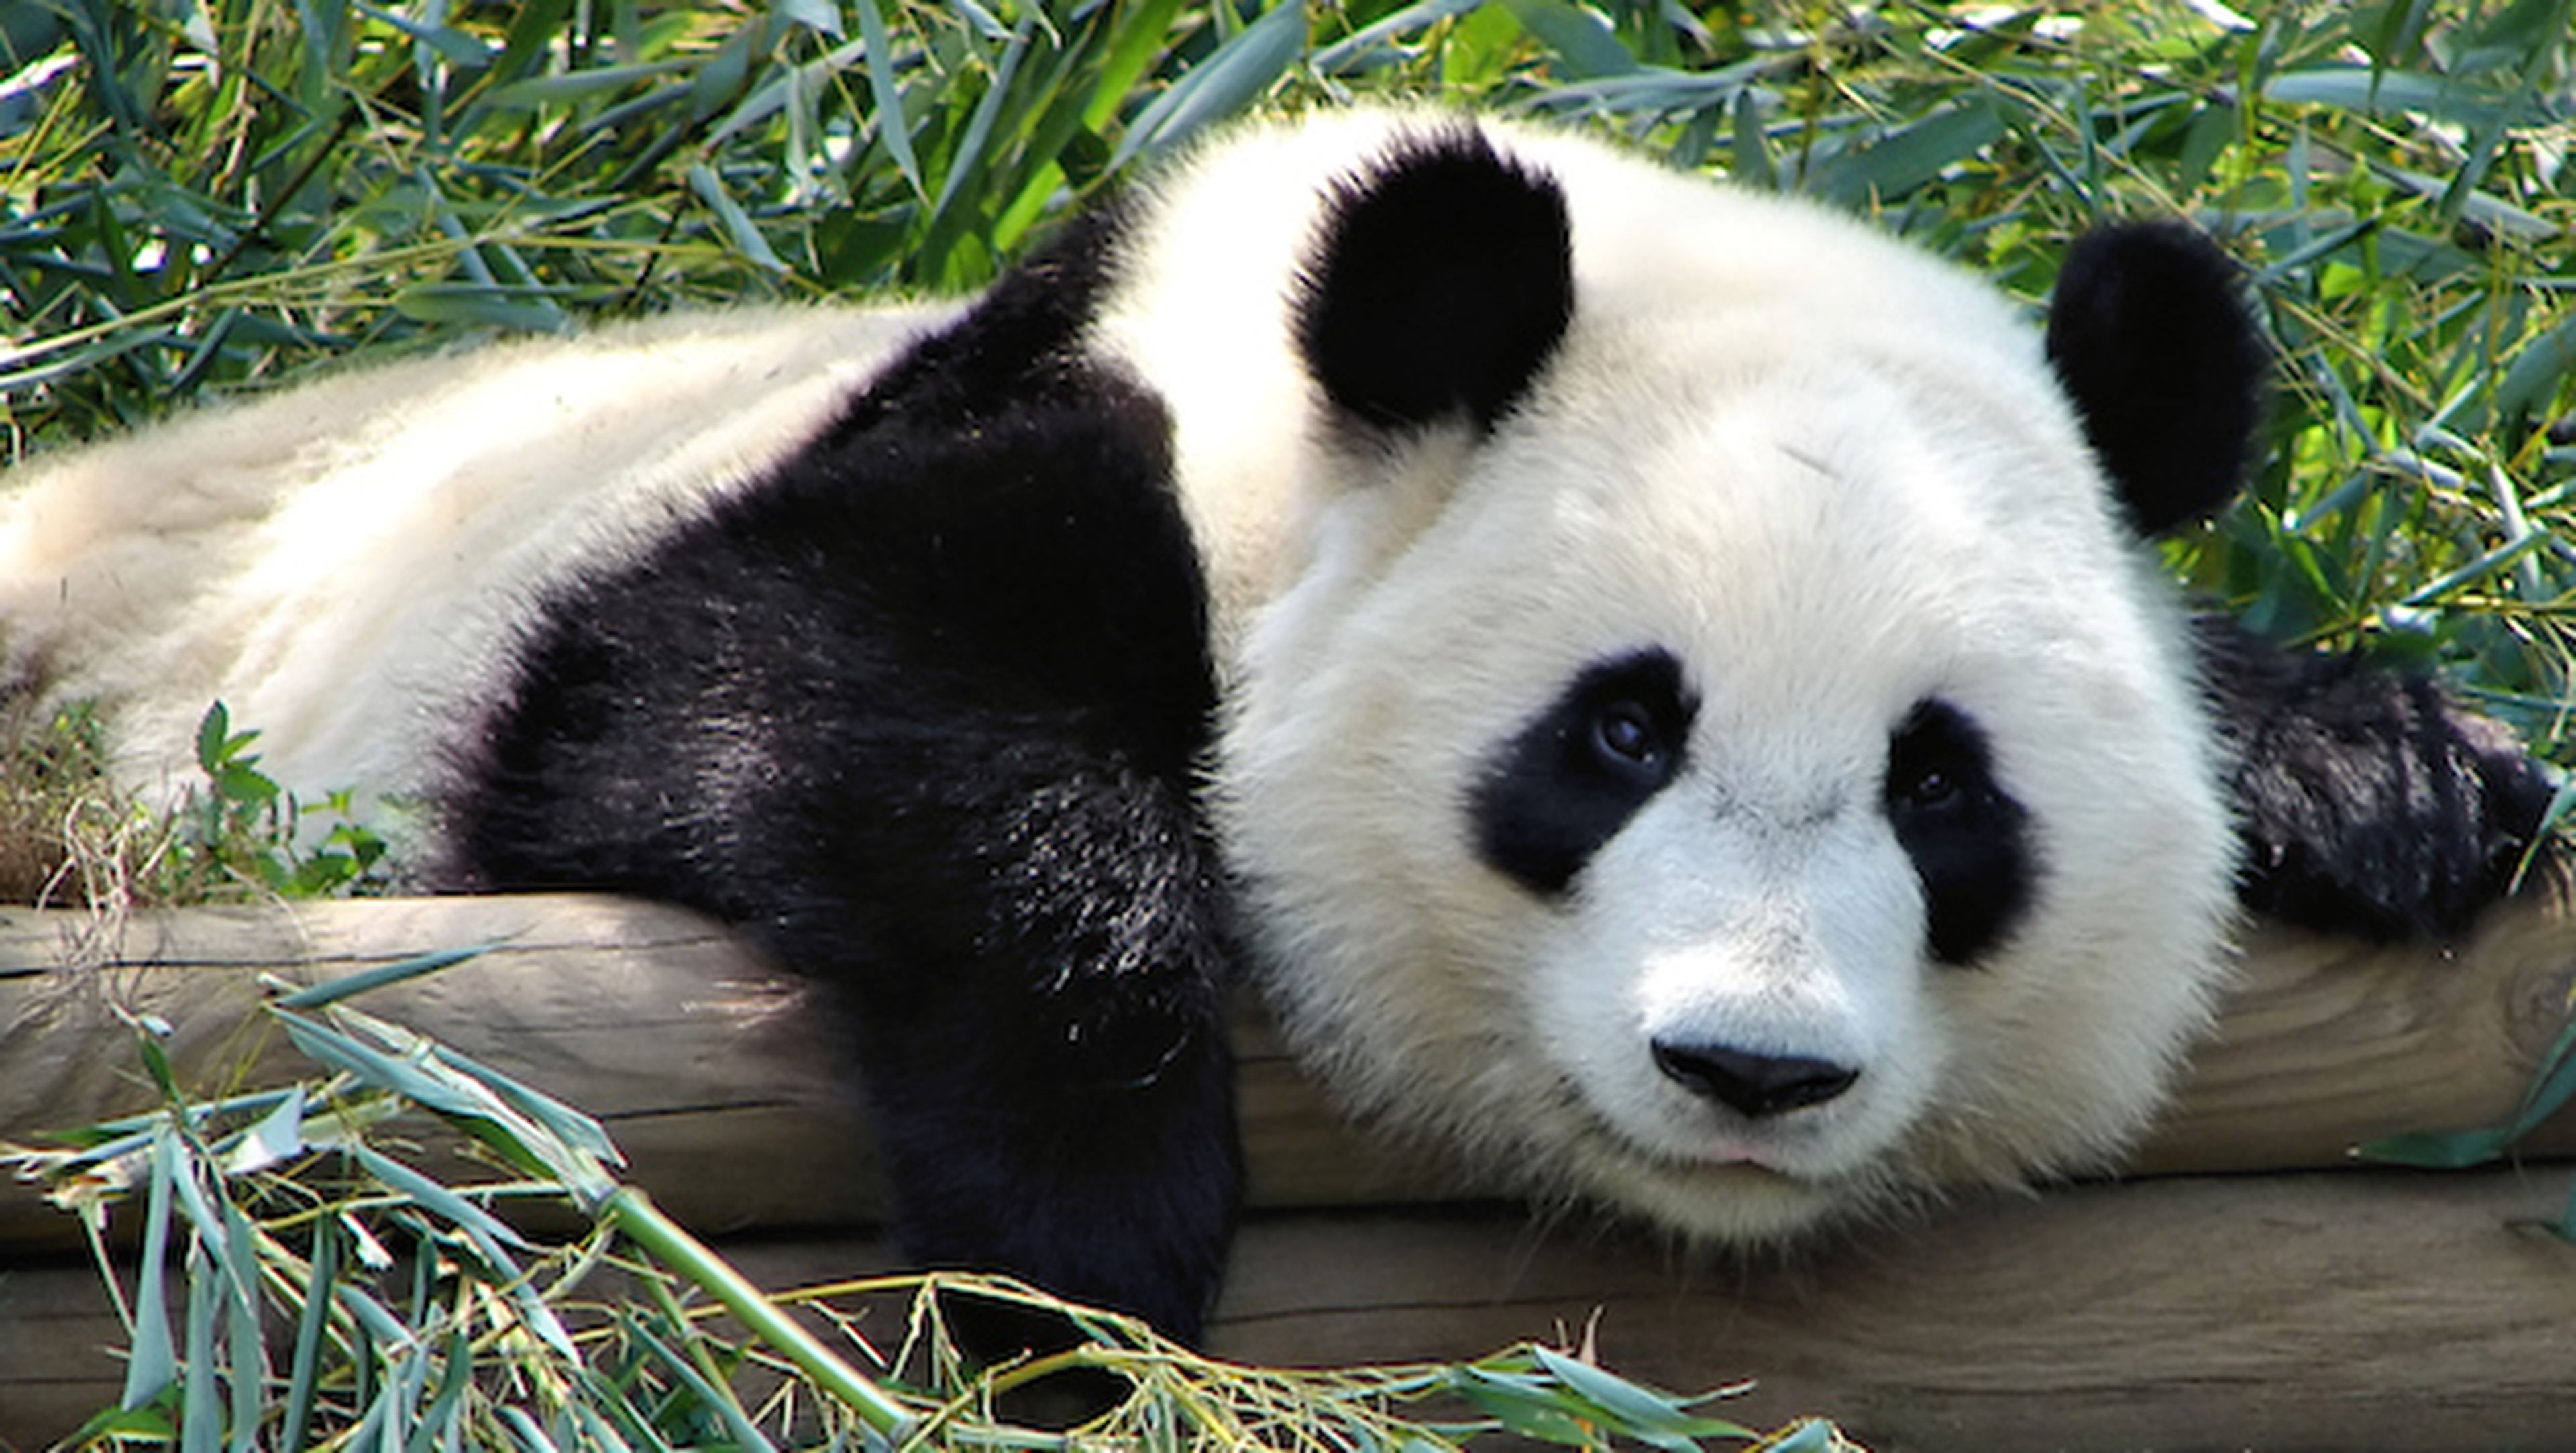 Científicos chinos descifran el lenguaje de los osos panda